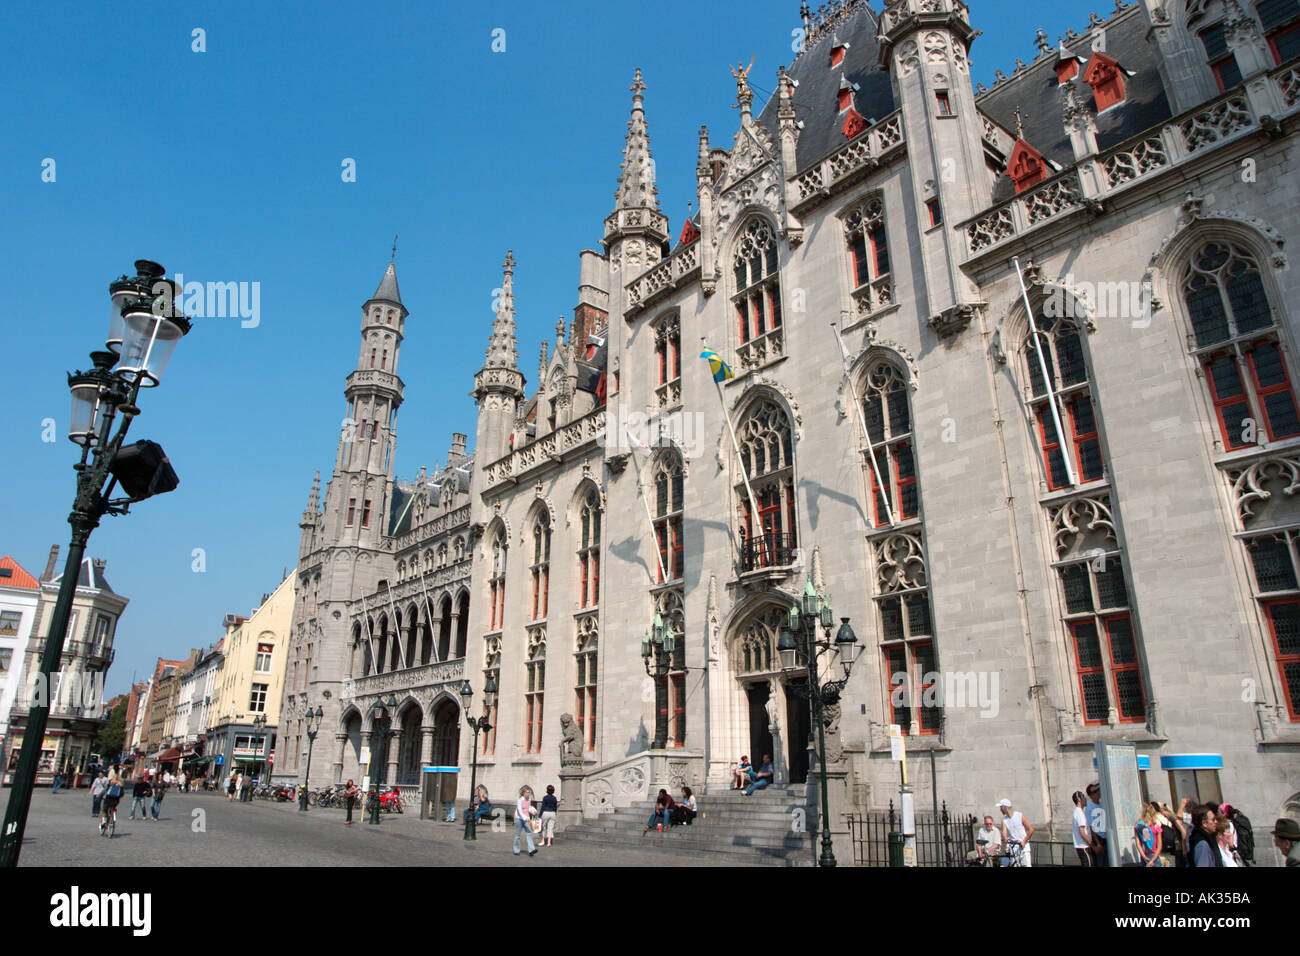 Bureau de poste dans le Markt (Grand Place), Bruges (Brugge), Belgique Banque D'Images